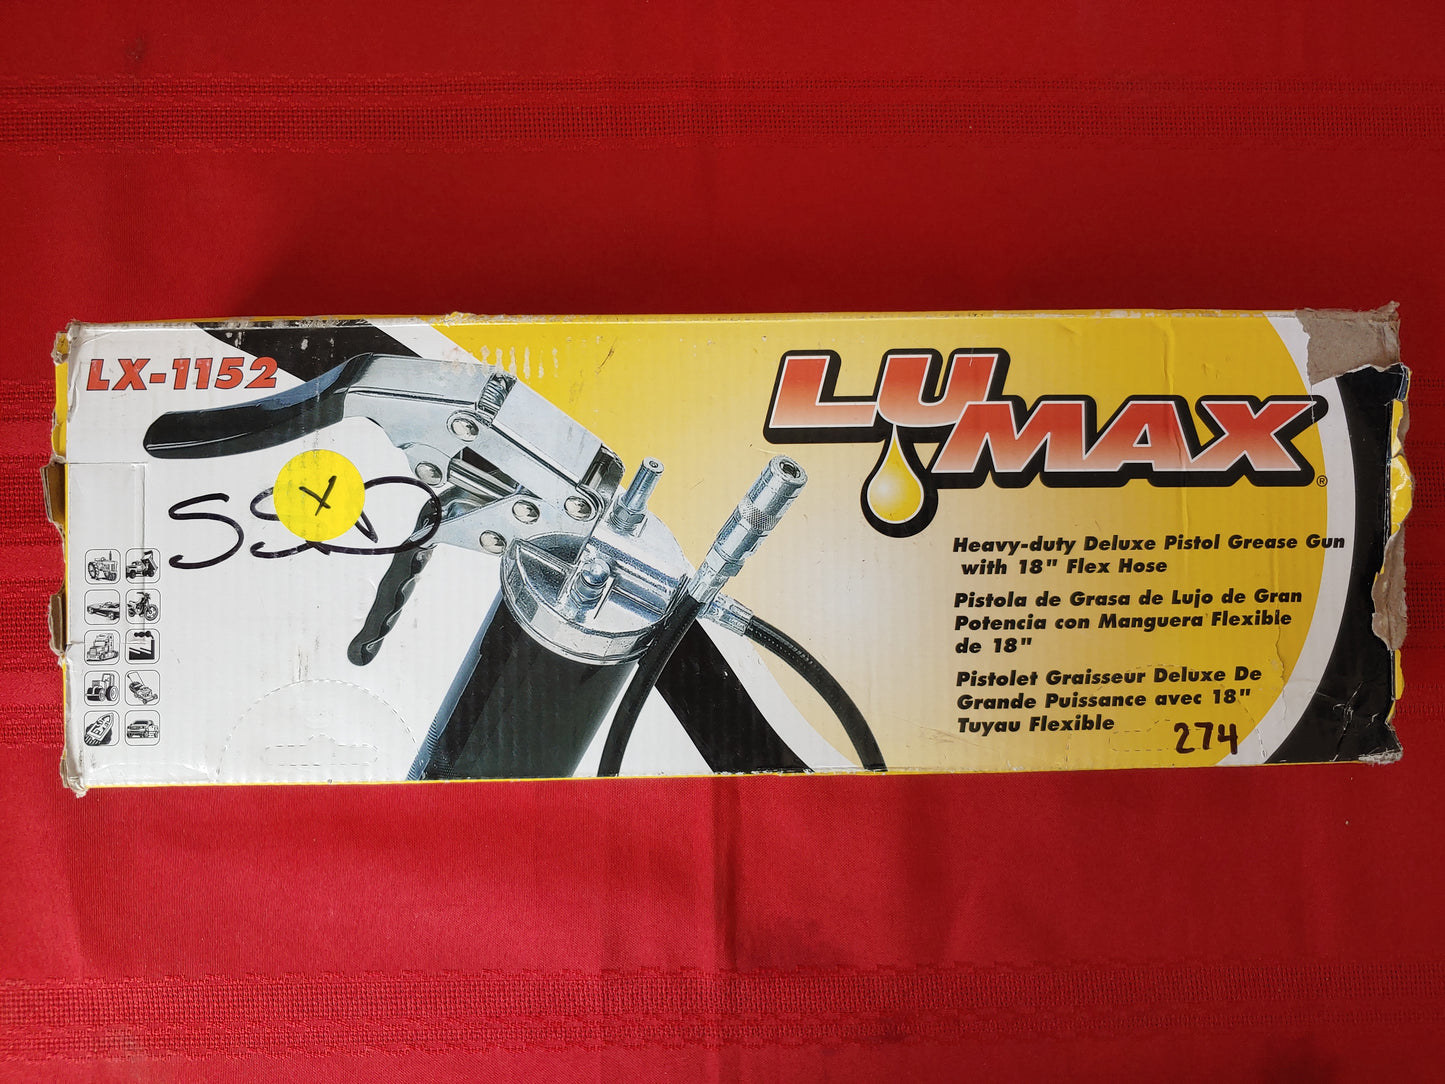 Grasera manual con manguera flexible de 18" - LuMax (Nuevo, caja abierta)